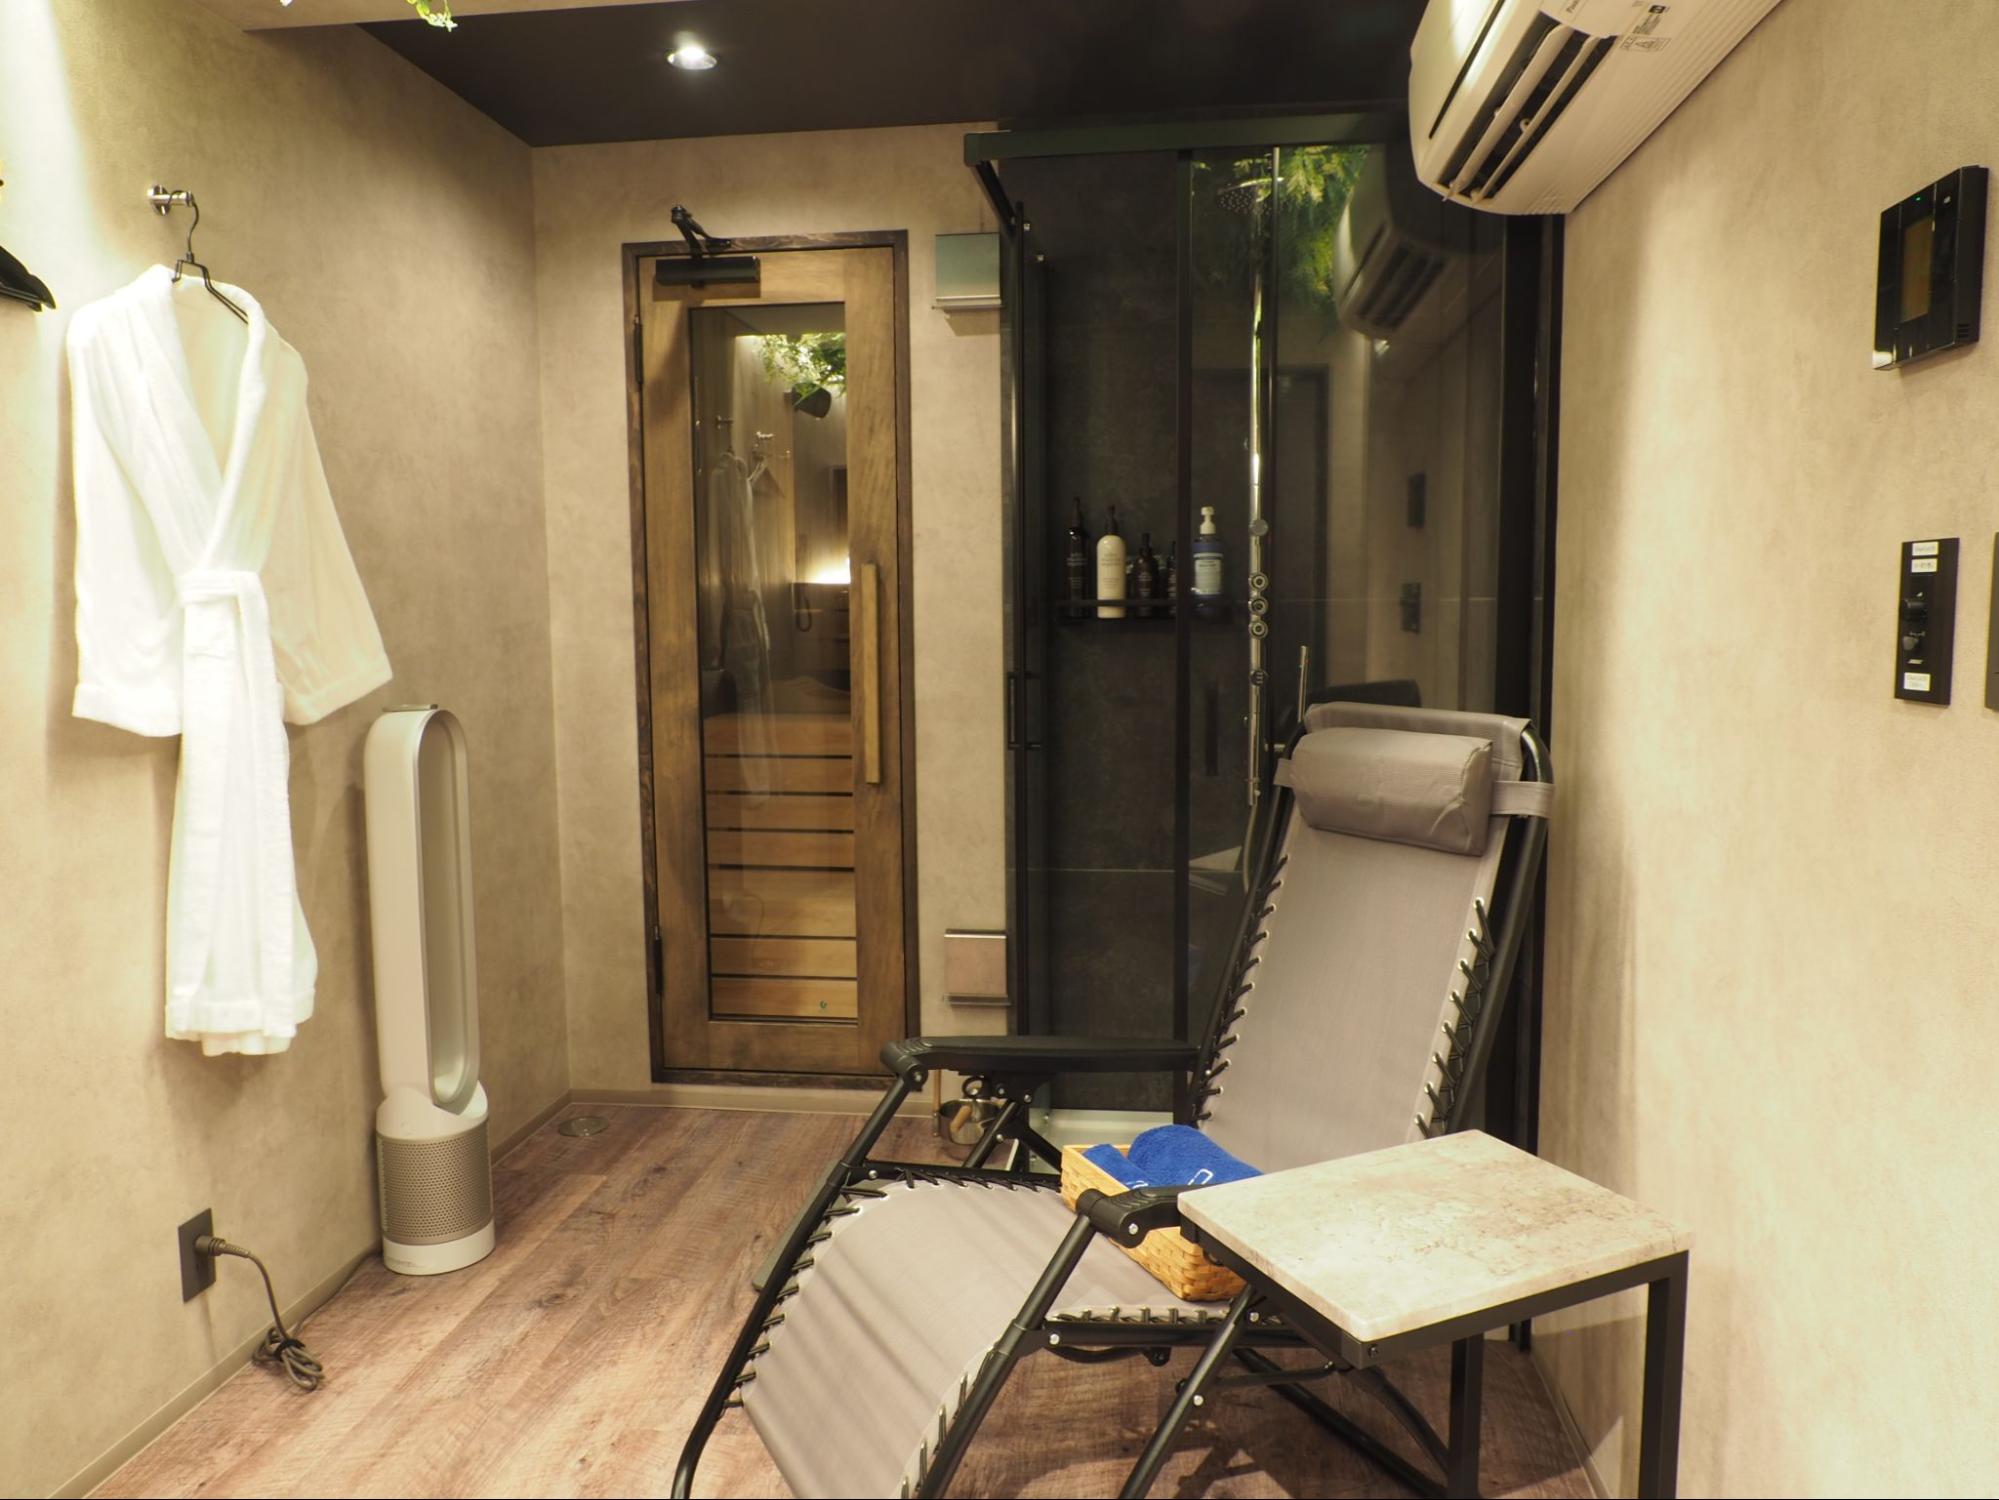 【閉業】本山エリアにある完全個室サウナ「MOTOYAMA SAUNA」ホテルライクな空間で上質なととのい